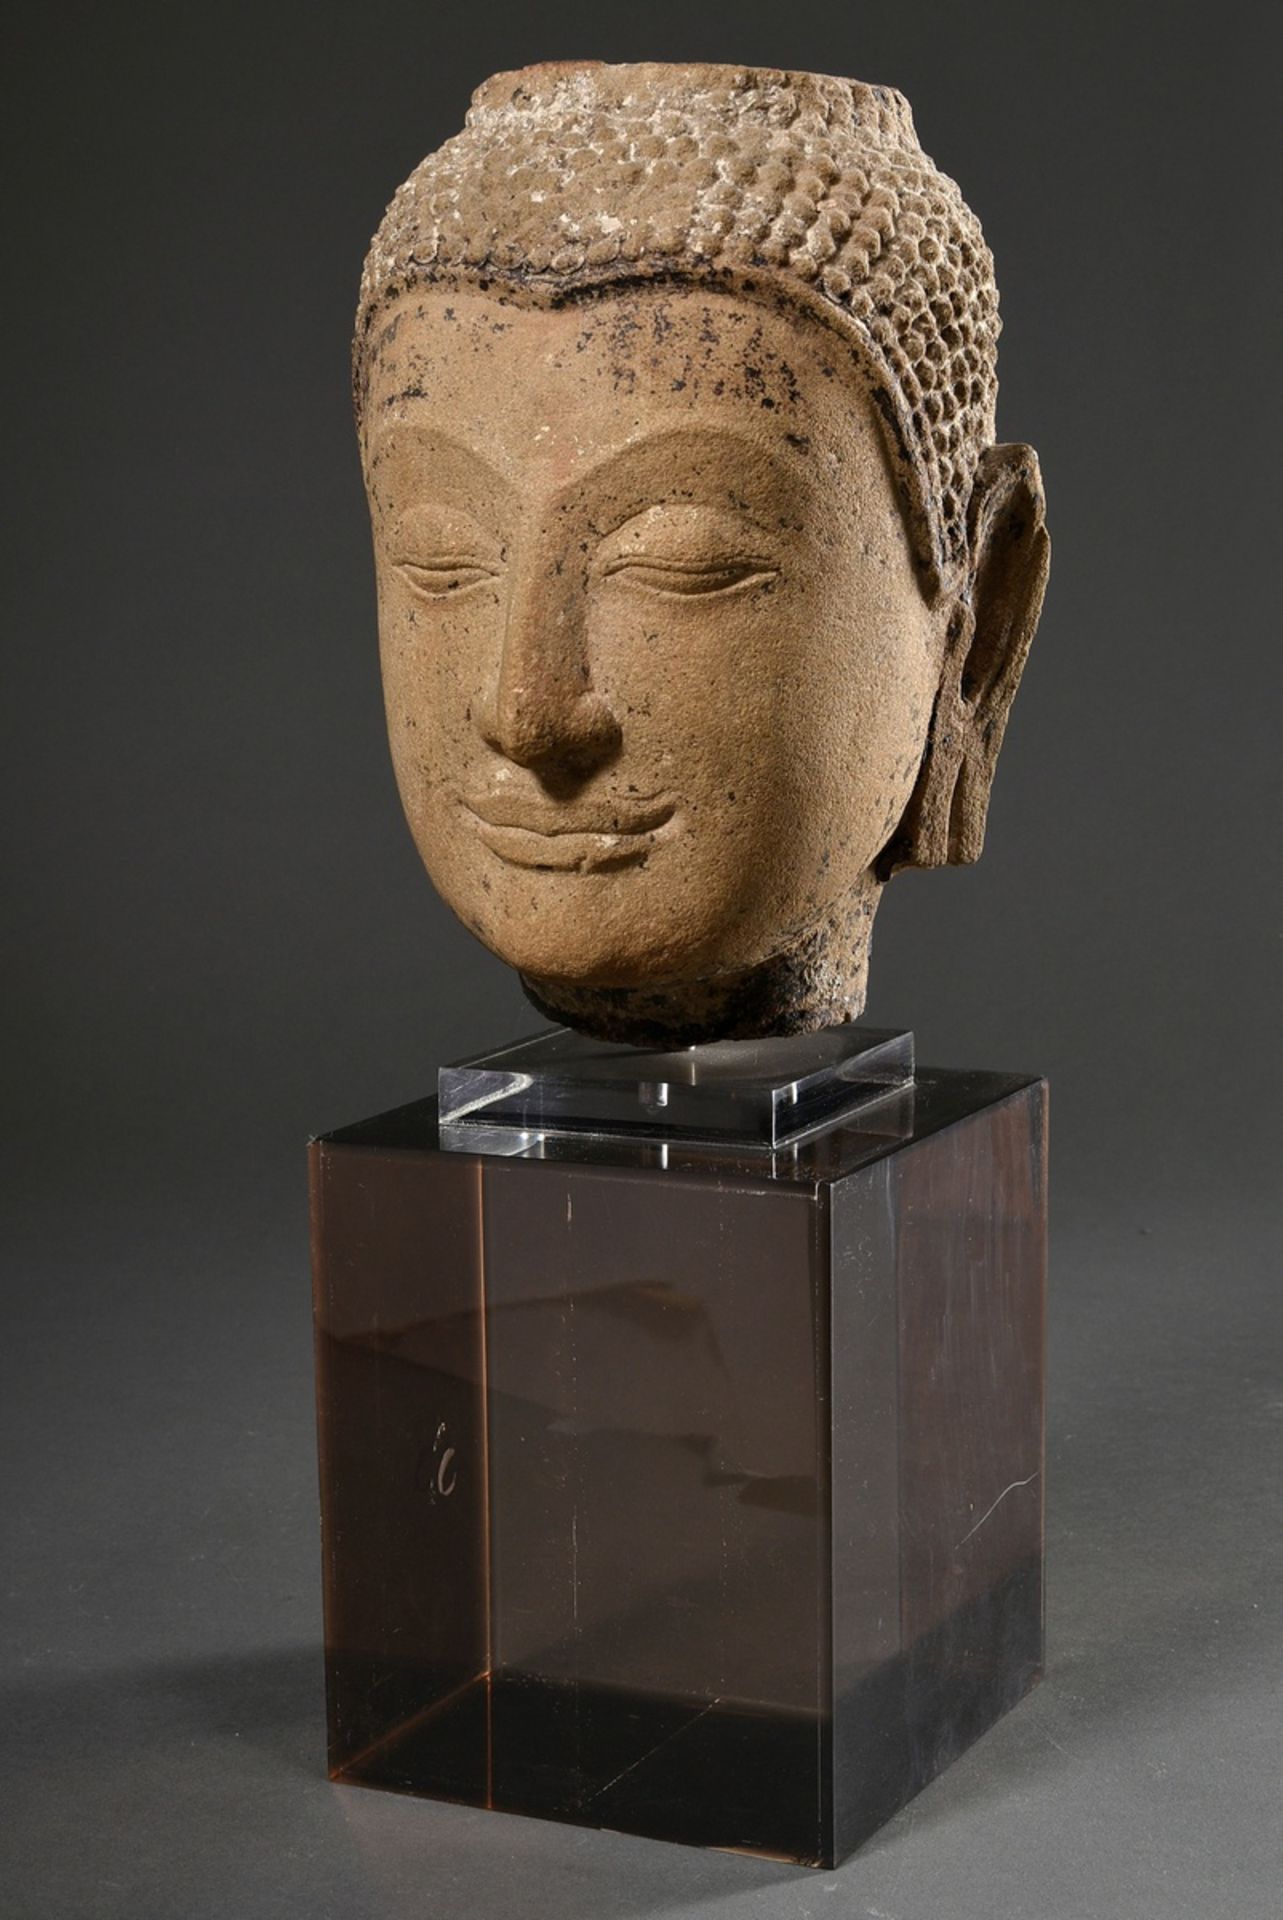 Ayutthaya Sandstein Buddha Kopf mit Resten von farbiger Bemalung, Thailand 15.-17. Jh., auf Plexigl